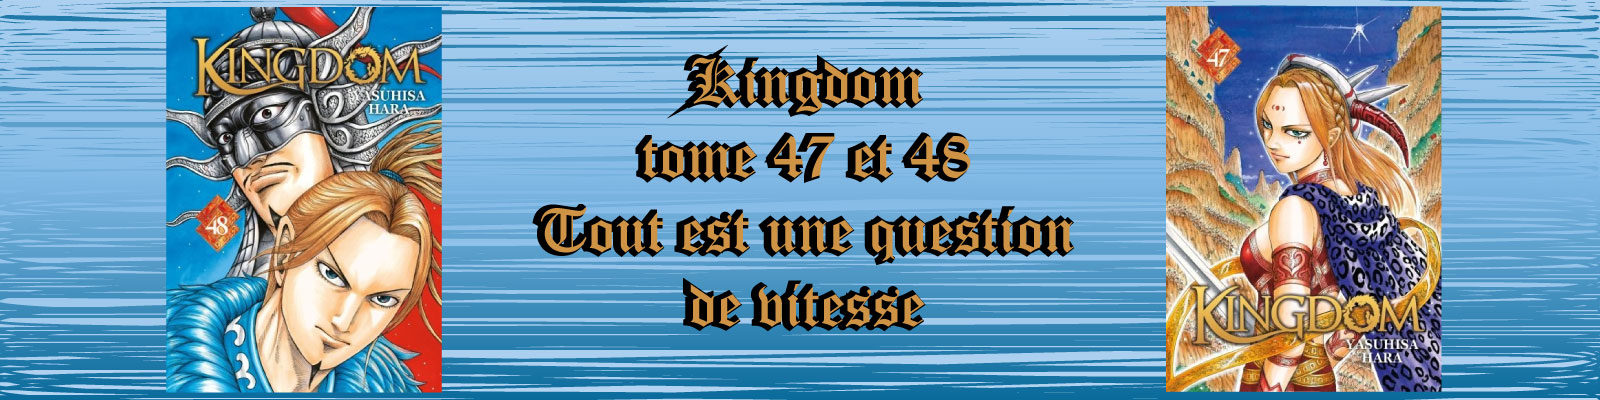 Kingdom-Vol.-47